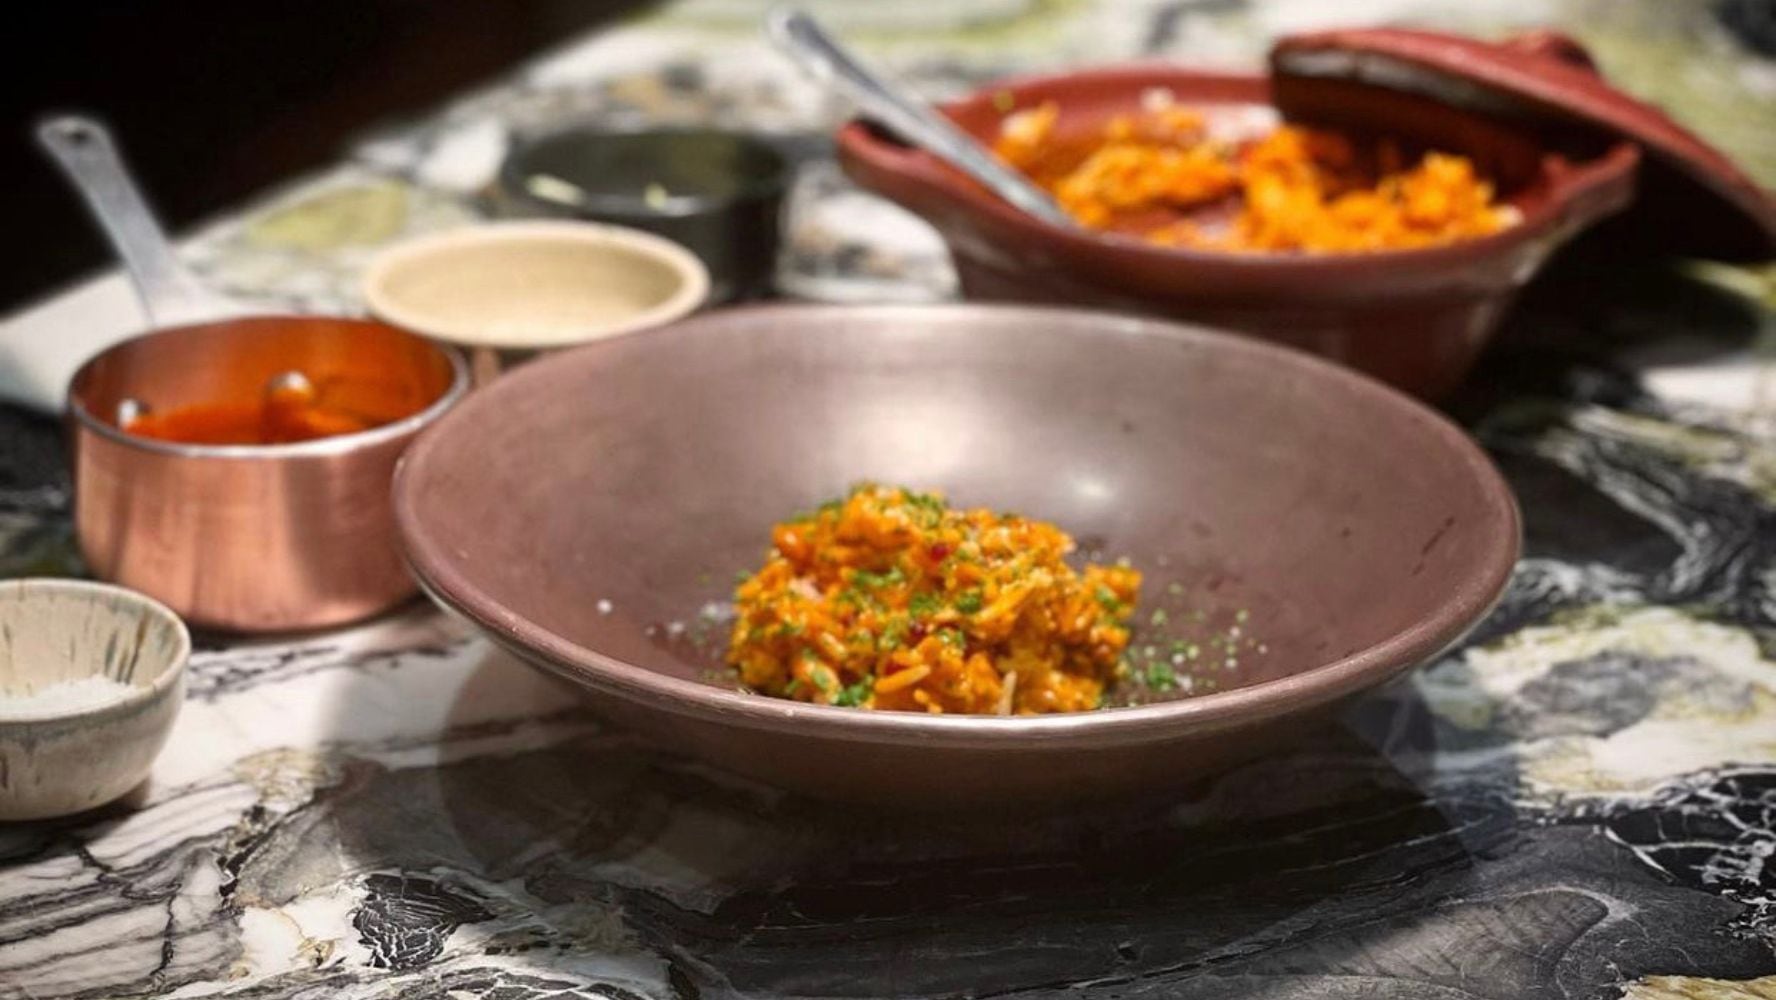 El restaurante Quintonil sirve platillos de comida mexicana. (Foto: Instagram / @rest_quintonil)